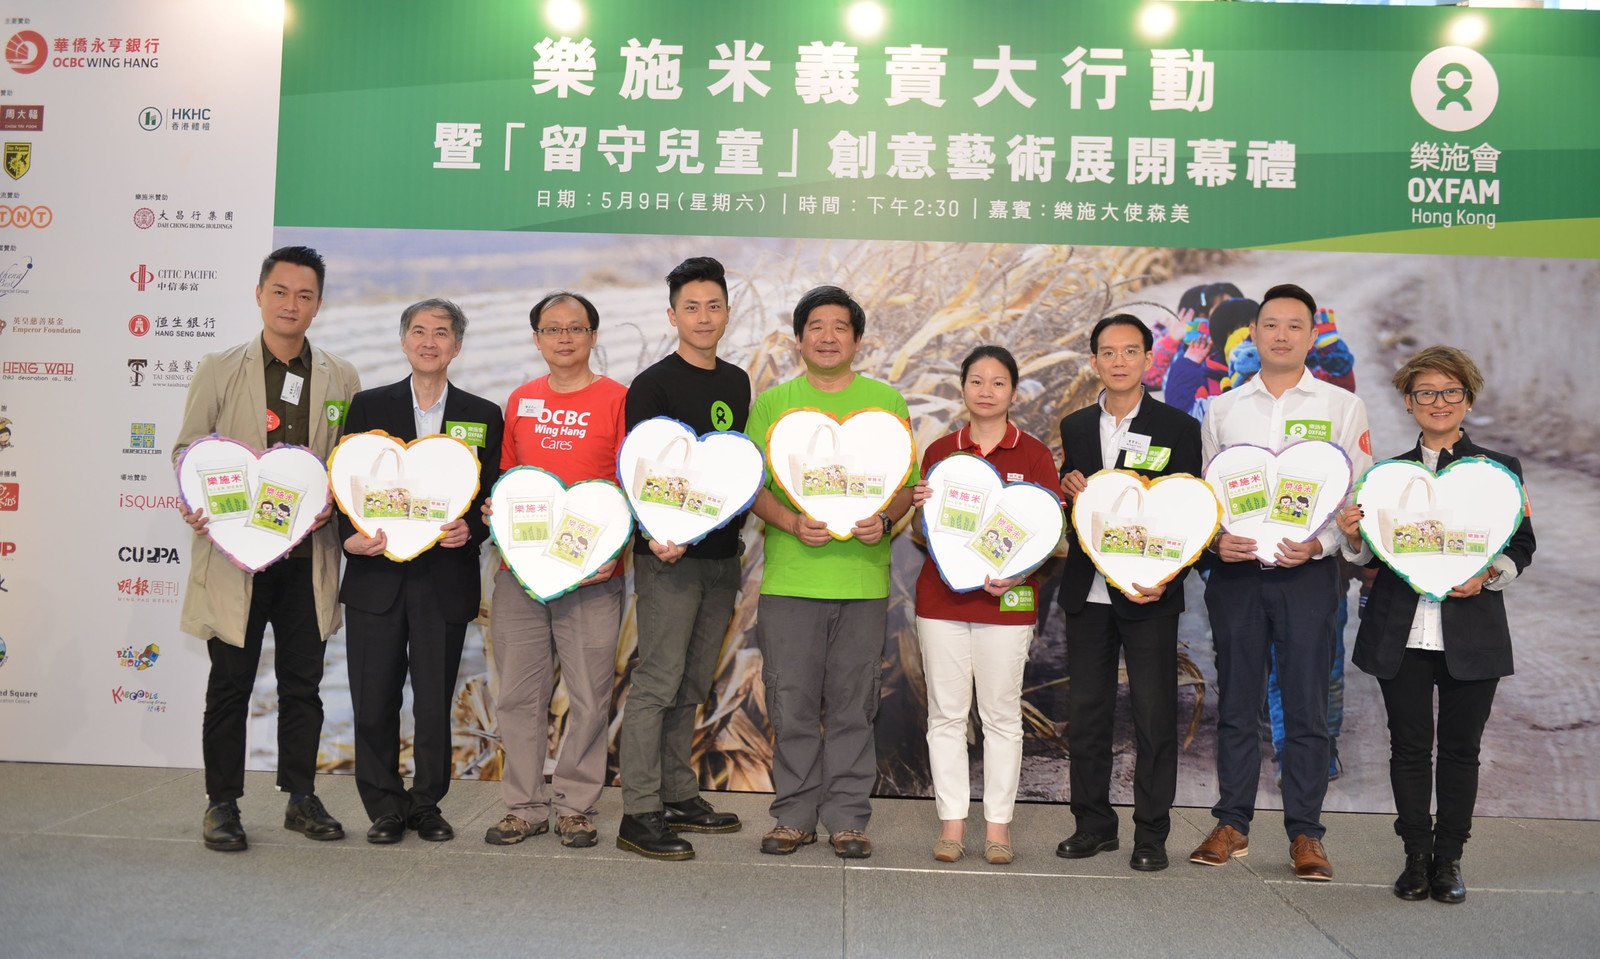 乐施大使森美 (左四)、乐施会董事会成员黄洪 (左五)、乐施会总裁余志稳 (左二)以及一众嘉宾一起支持「乐施米义卖大行动」。